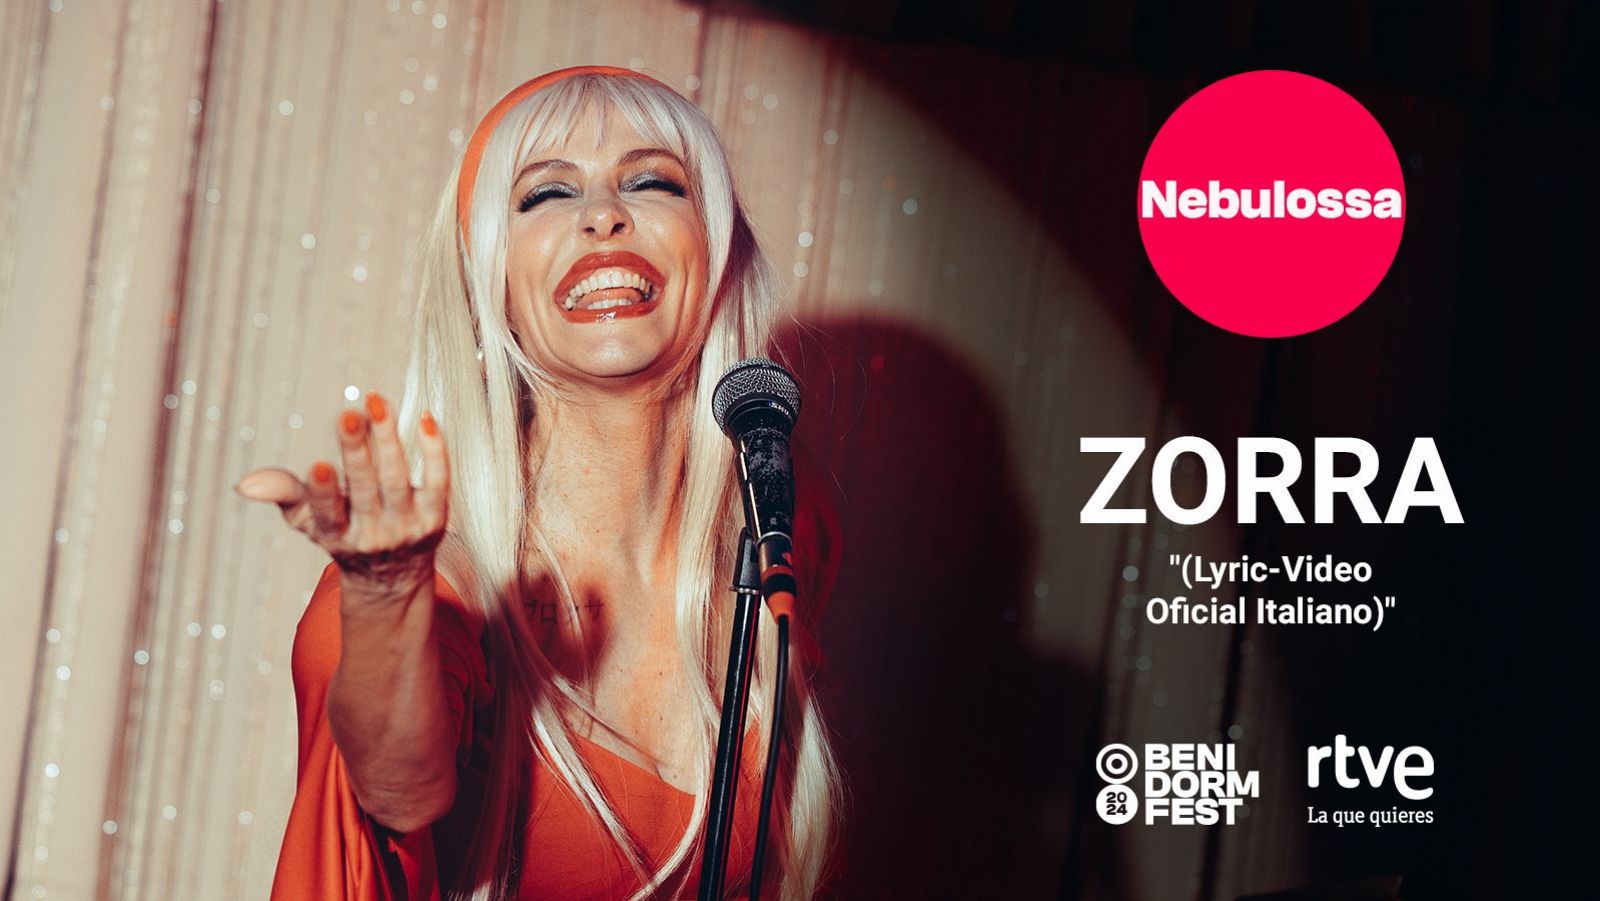 Eurovisión 2024 | Zorra" de Nebulossa, videoclip oficial (Traducción al italiano)